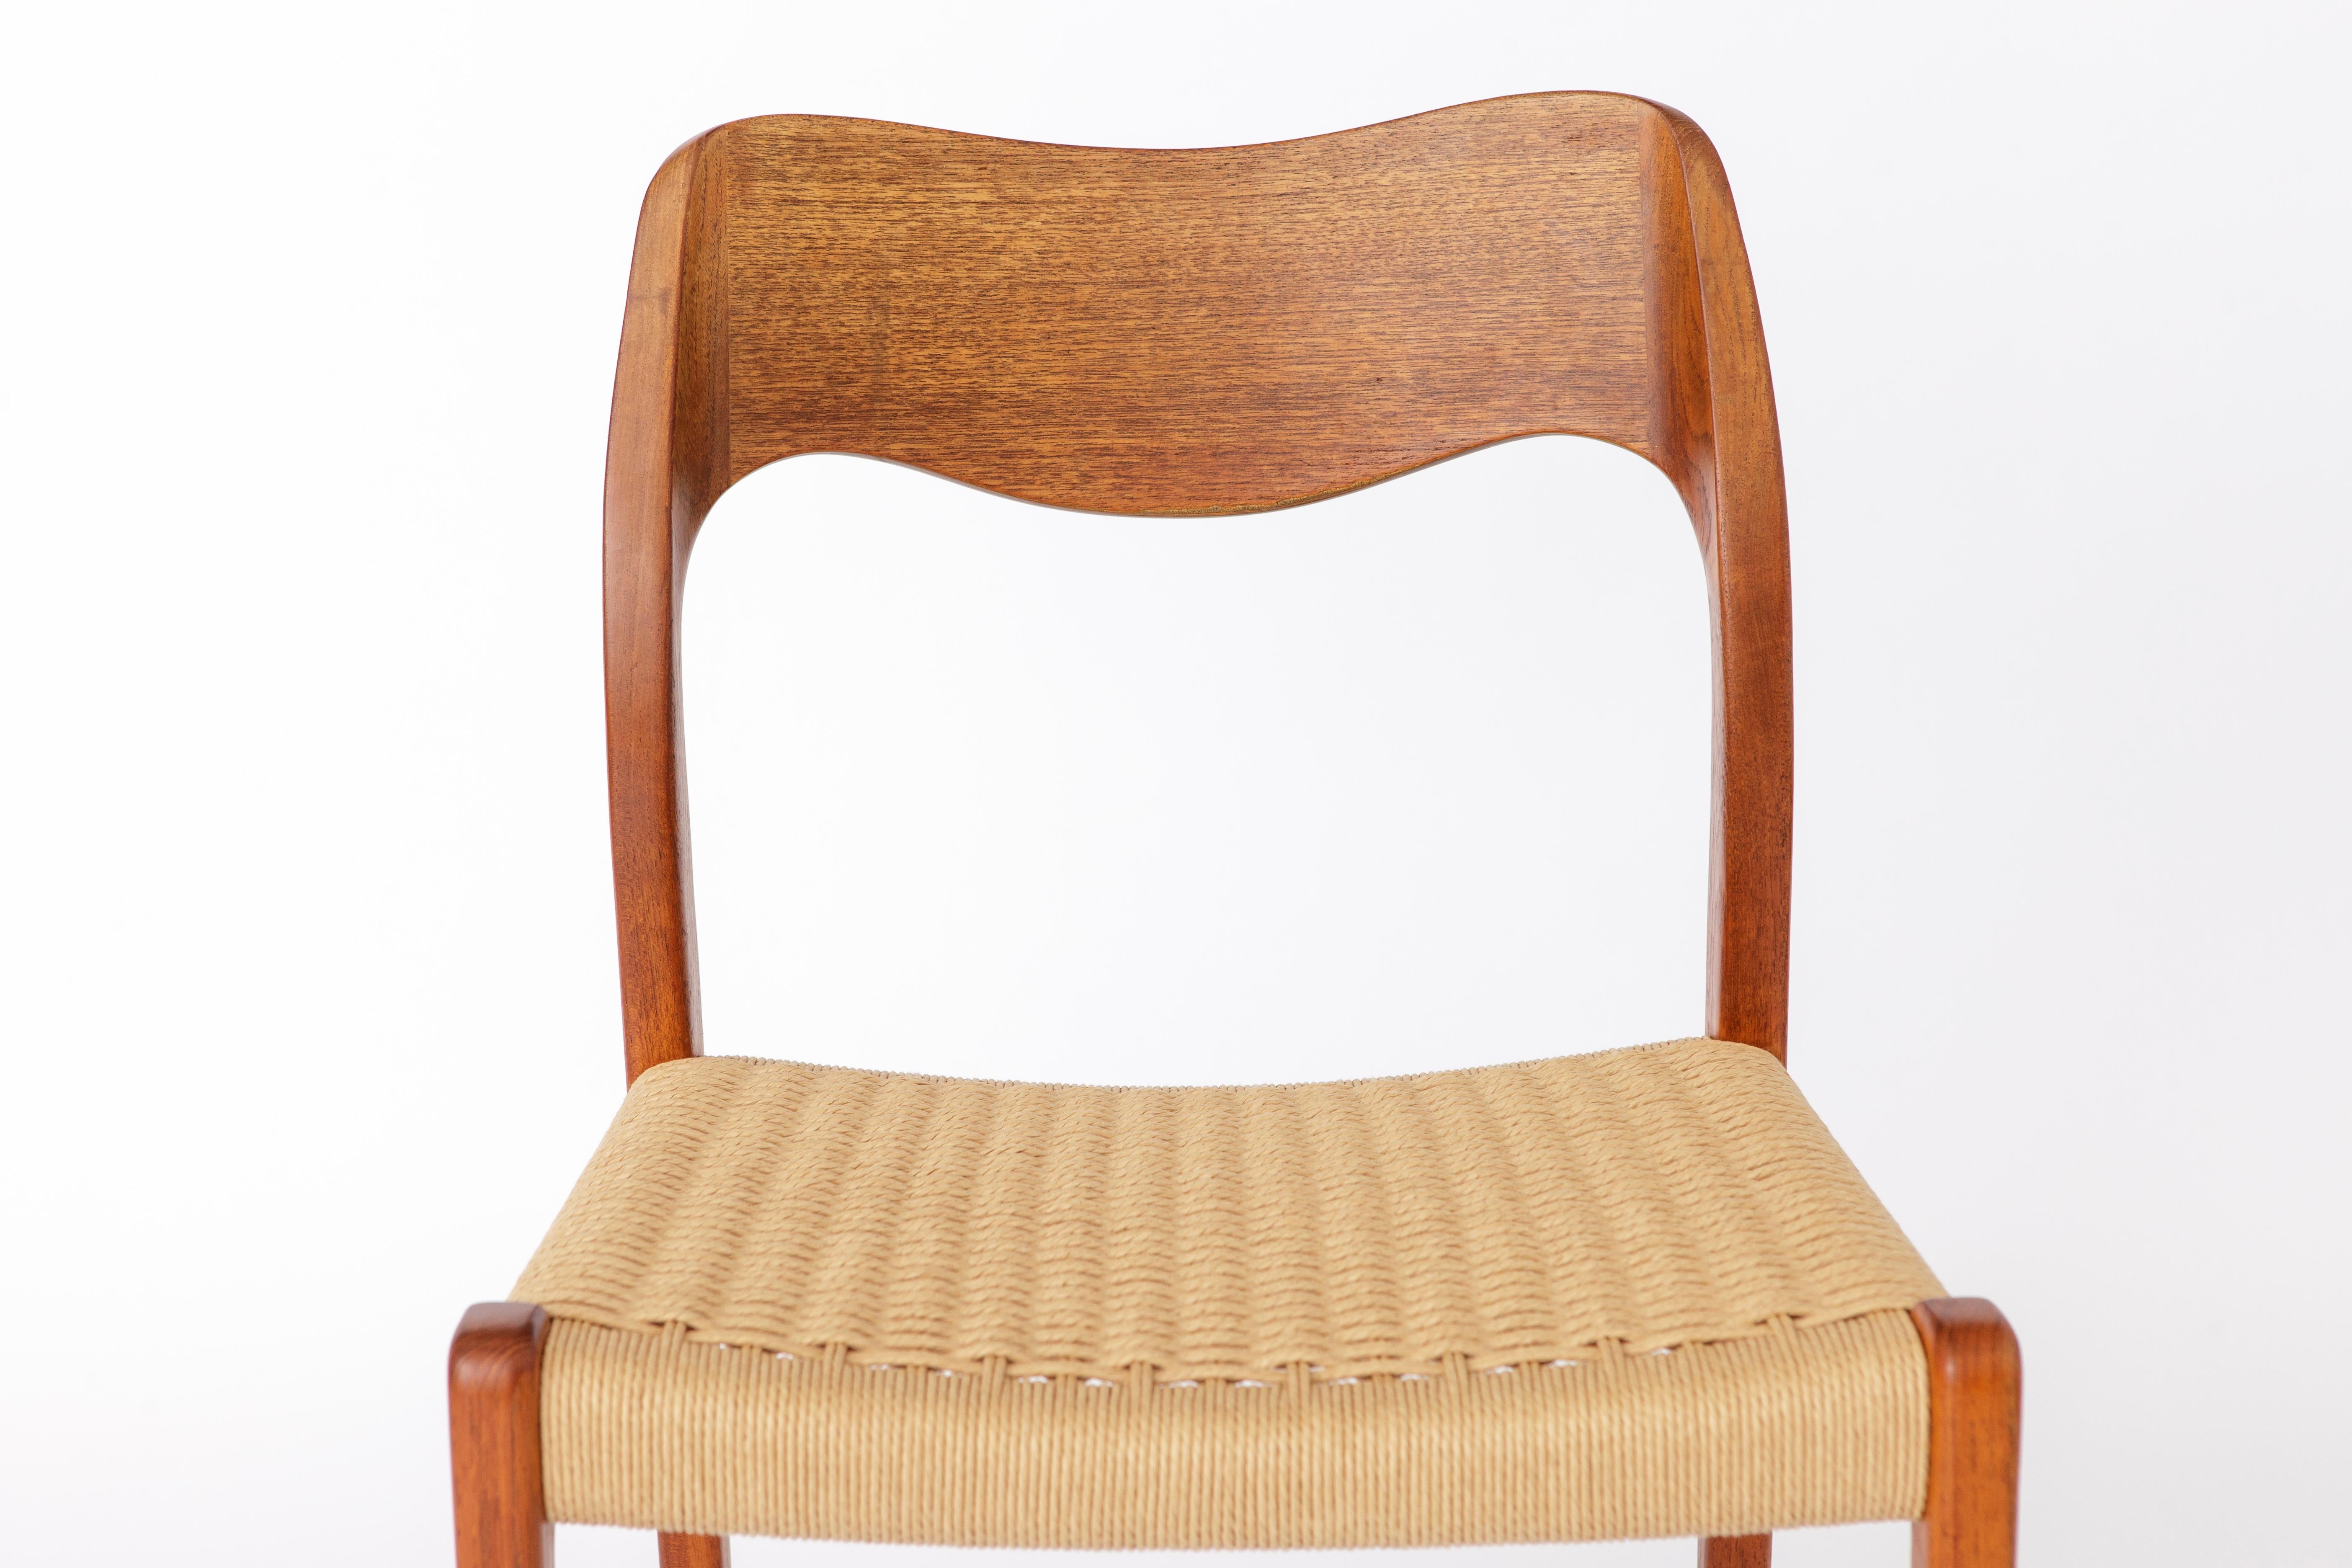 1 von 2 Niels Otto Moller Stühlen. Modell 71 in Teakholz. 
Produktionszeitraum: 1950s. 
Der angezeigte Preis gilt für 1 Stühle. Insgesamt 2 verfügbar. 

Sehr guter Zustand. Stabiler Teakholzrahmen. Aufgearbeitet und geölt. 
Die Sitzbezüge wurden